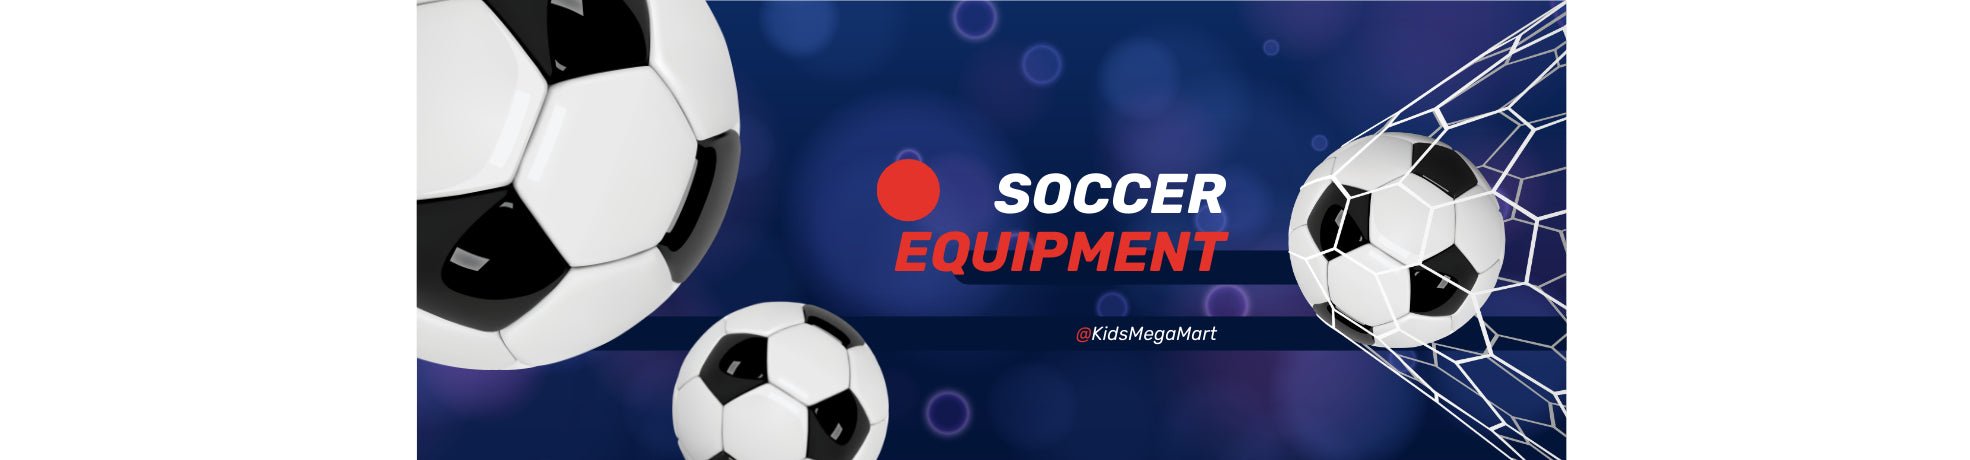 Soccer Equipment - Kids Mega Mart